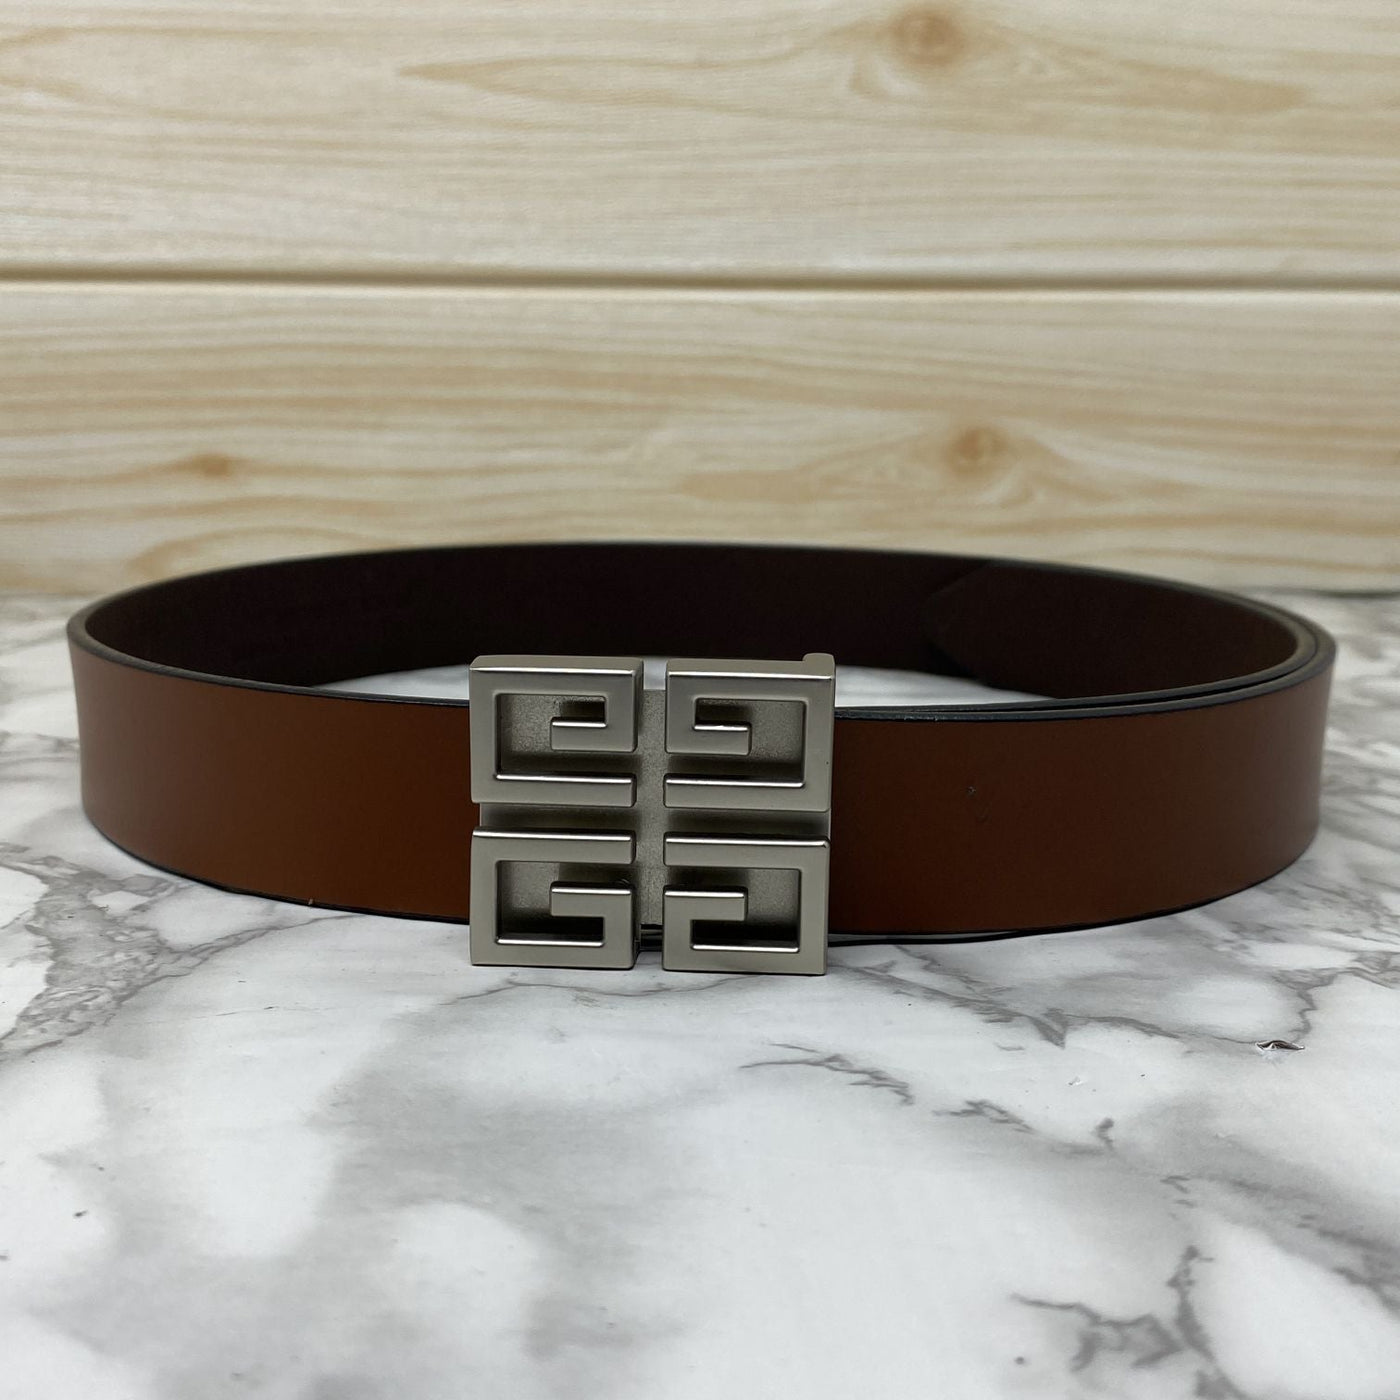 Square Section Leather Strap Belt-UniqueandClassy